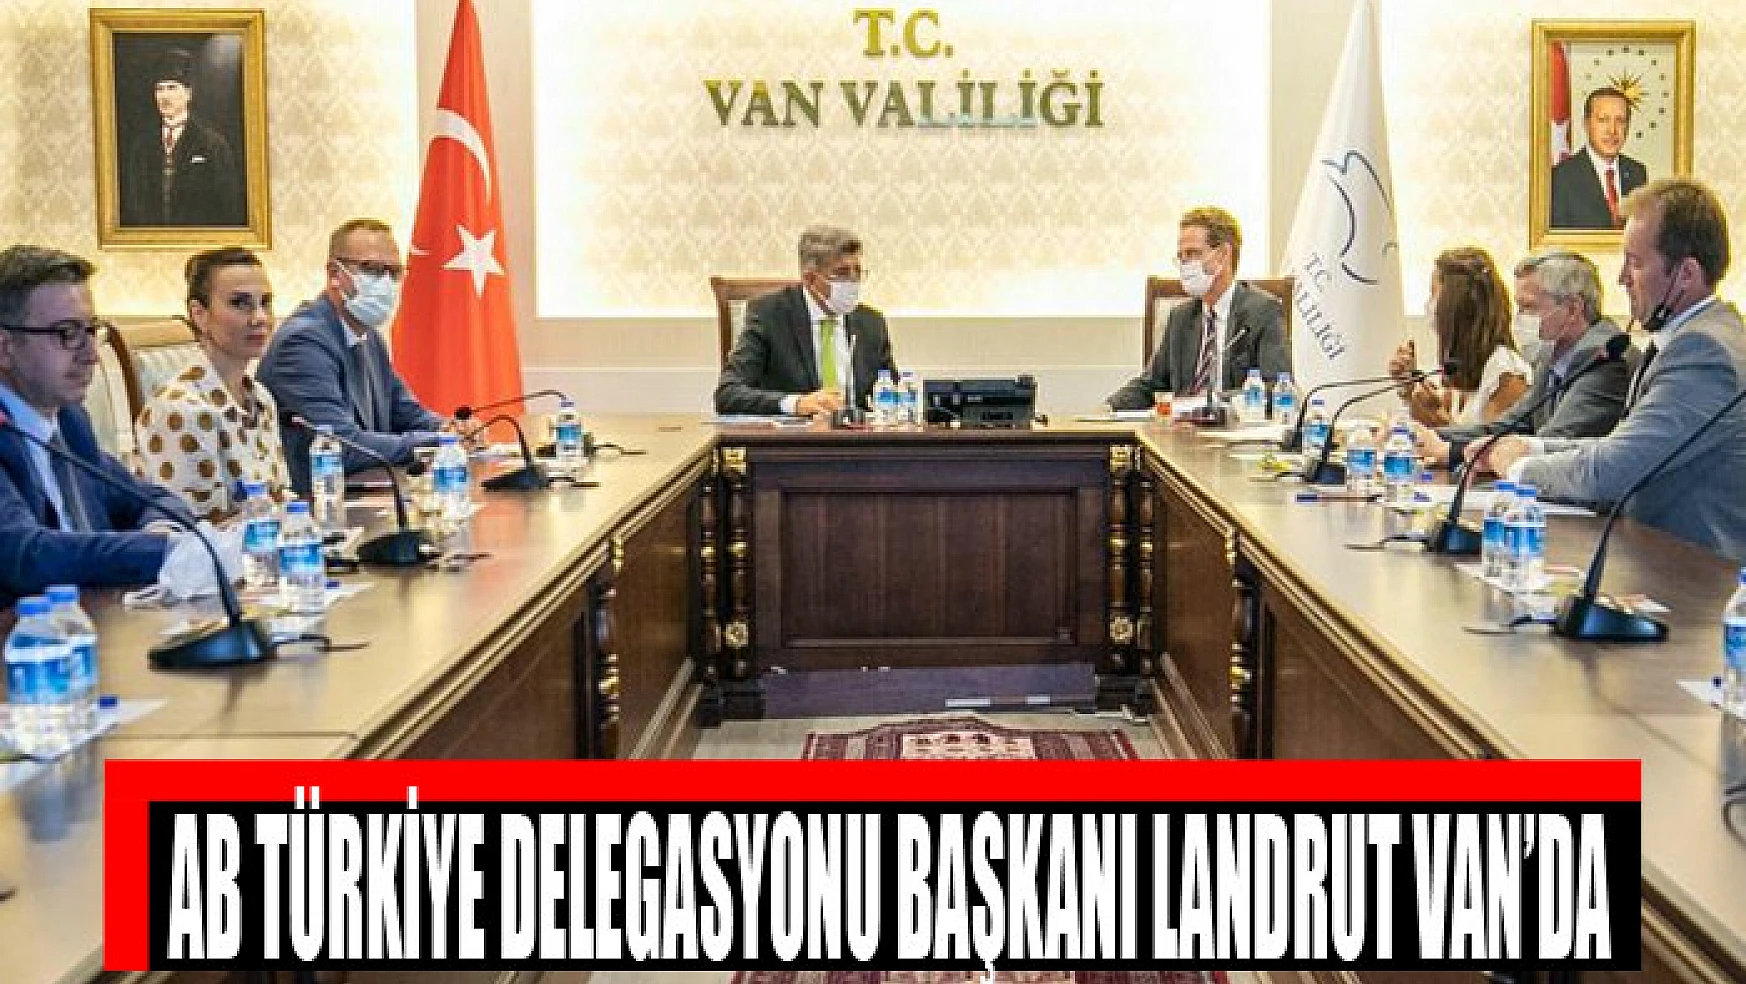 AB Türkiye Delegasyonu Başkanı Landrut Van'da